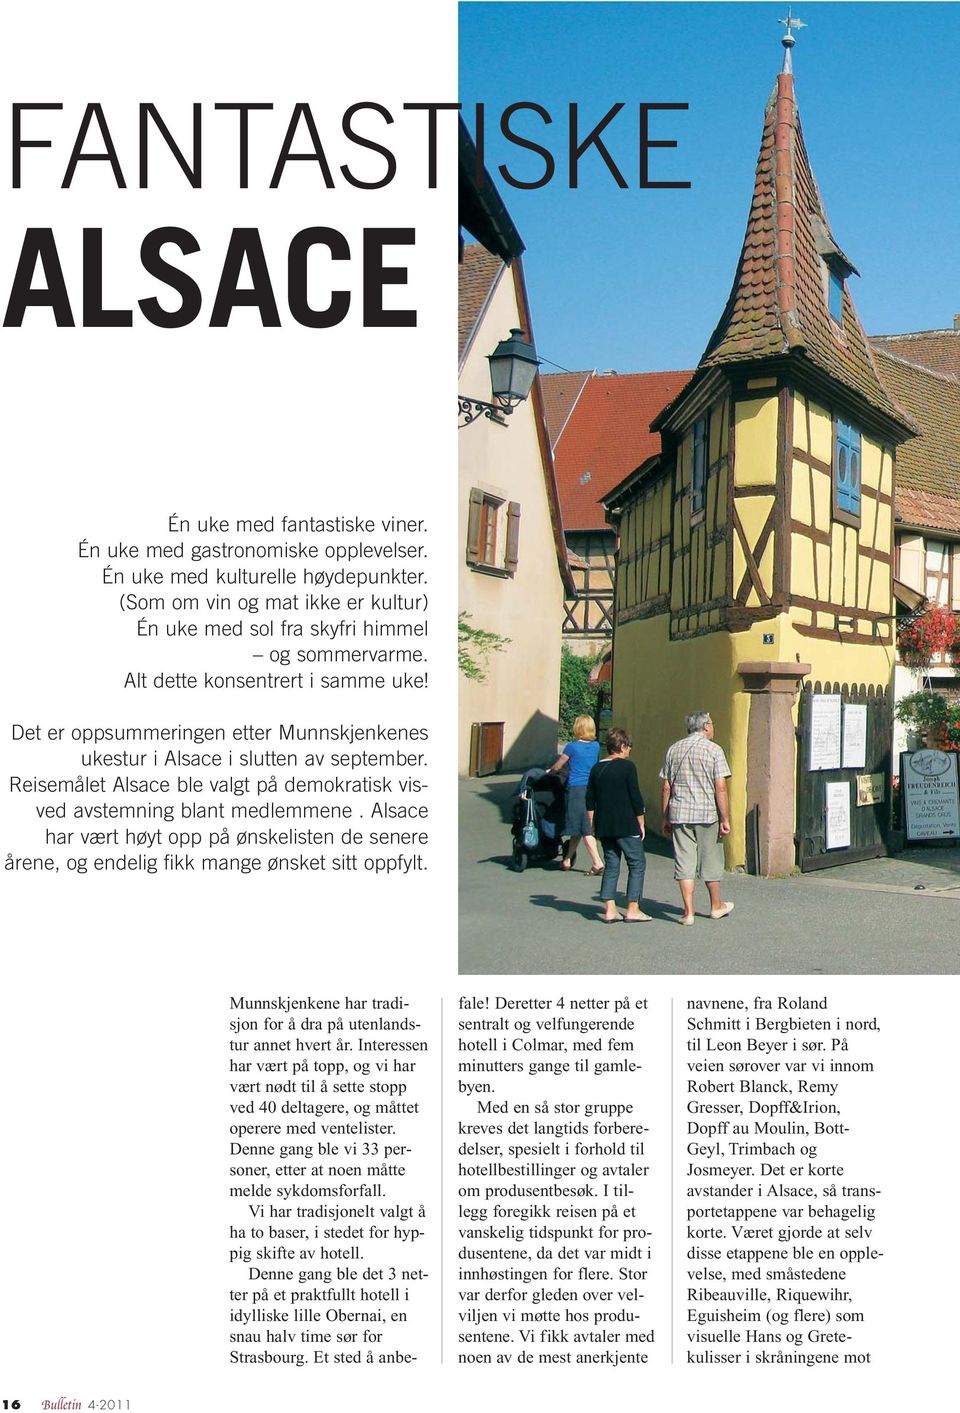 Det er oppsummeringen etter Munnskjenkenes ukestur i Alsace i slutten av september. Reisemålet Alsace ble valgt på demokratisk visved avstemning blant medlemmene.